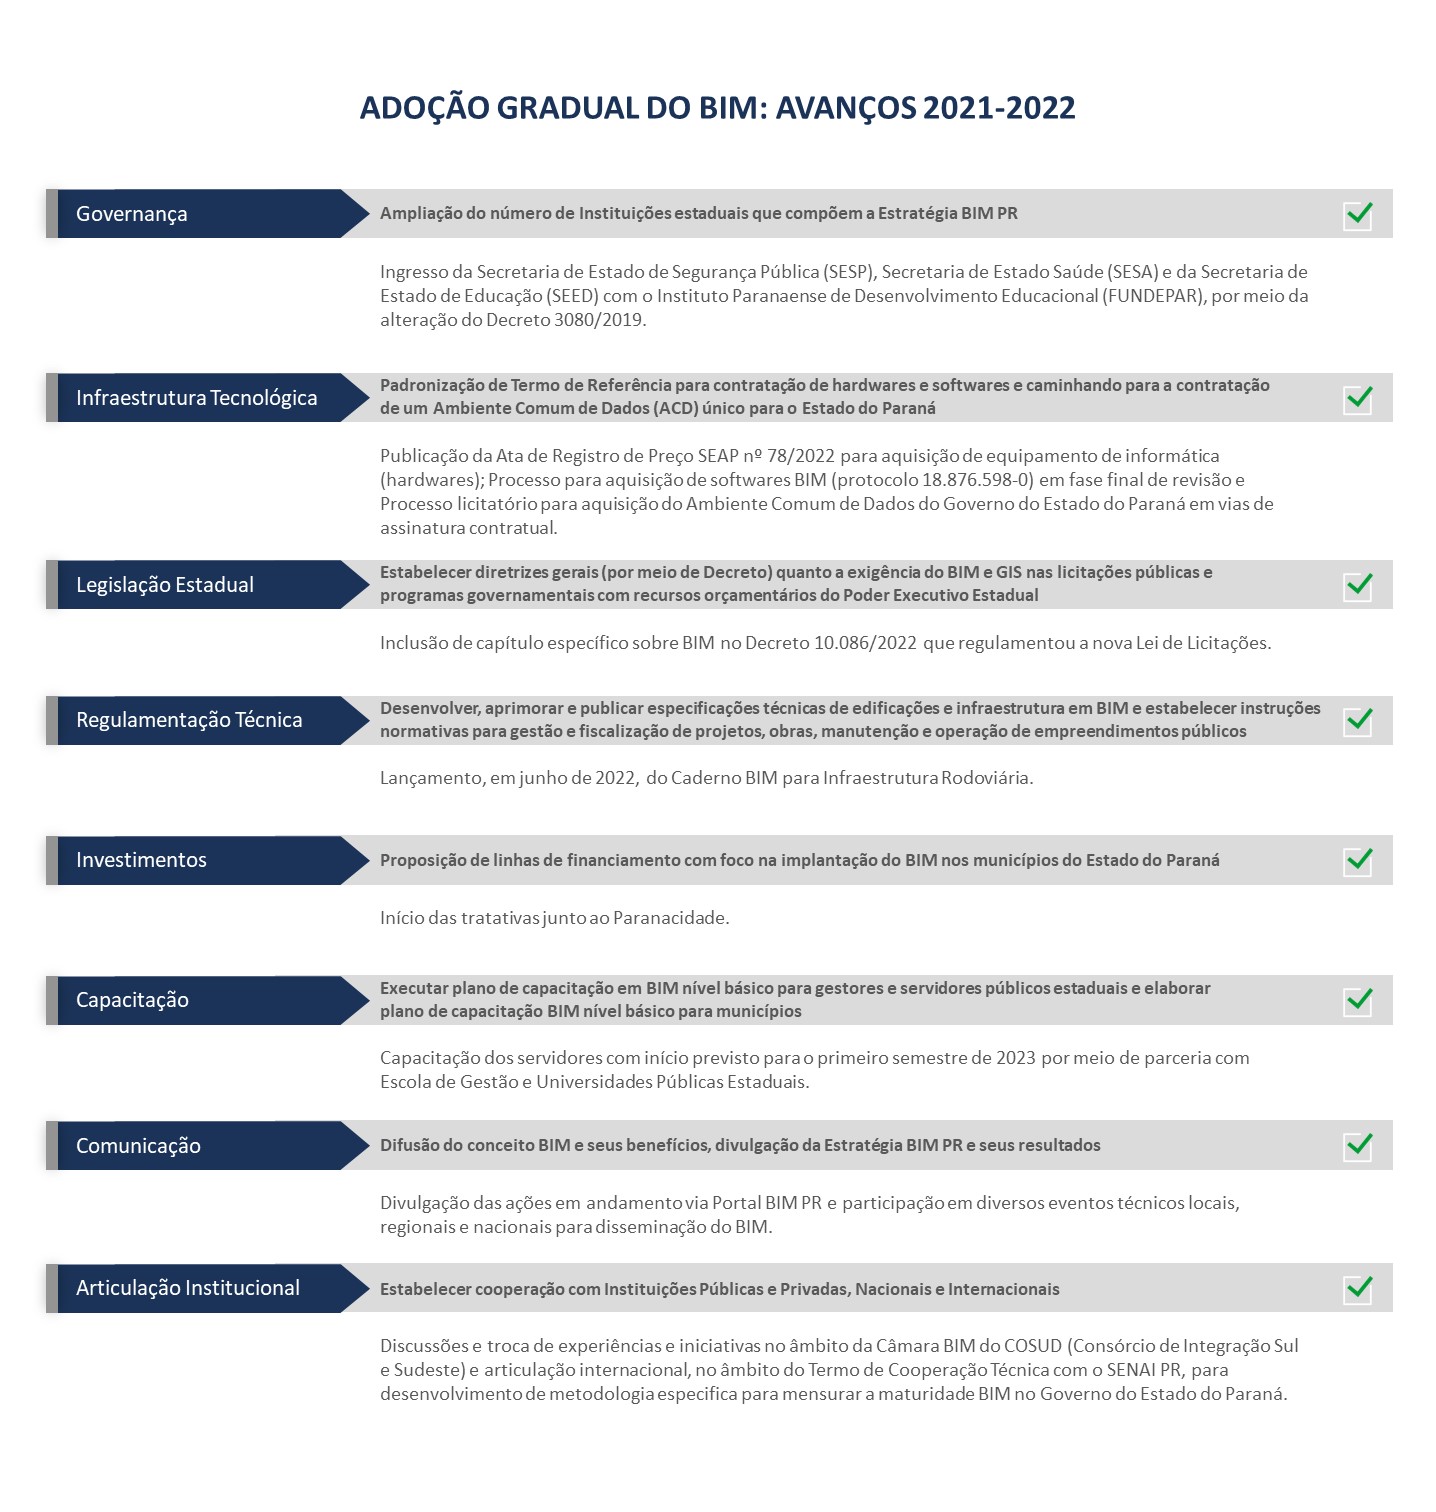 Adoção Gradual do BIM entre 2021-2022